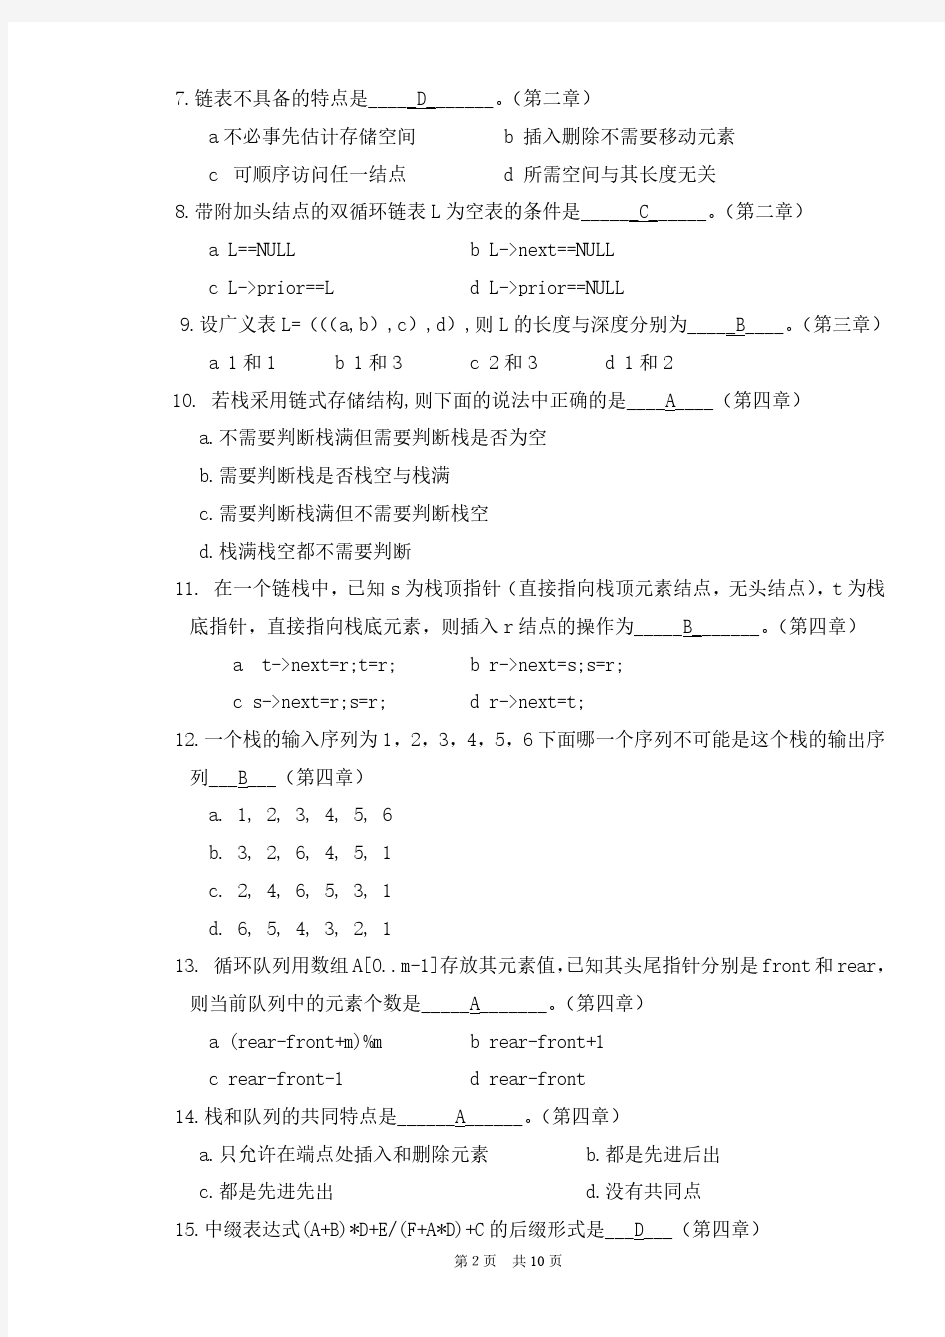 北京大学2016年秋季学期《数据结构》课程作业【答案】